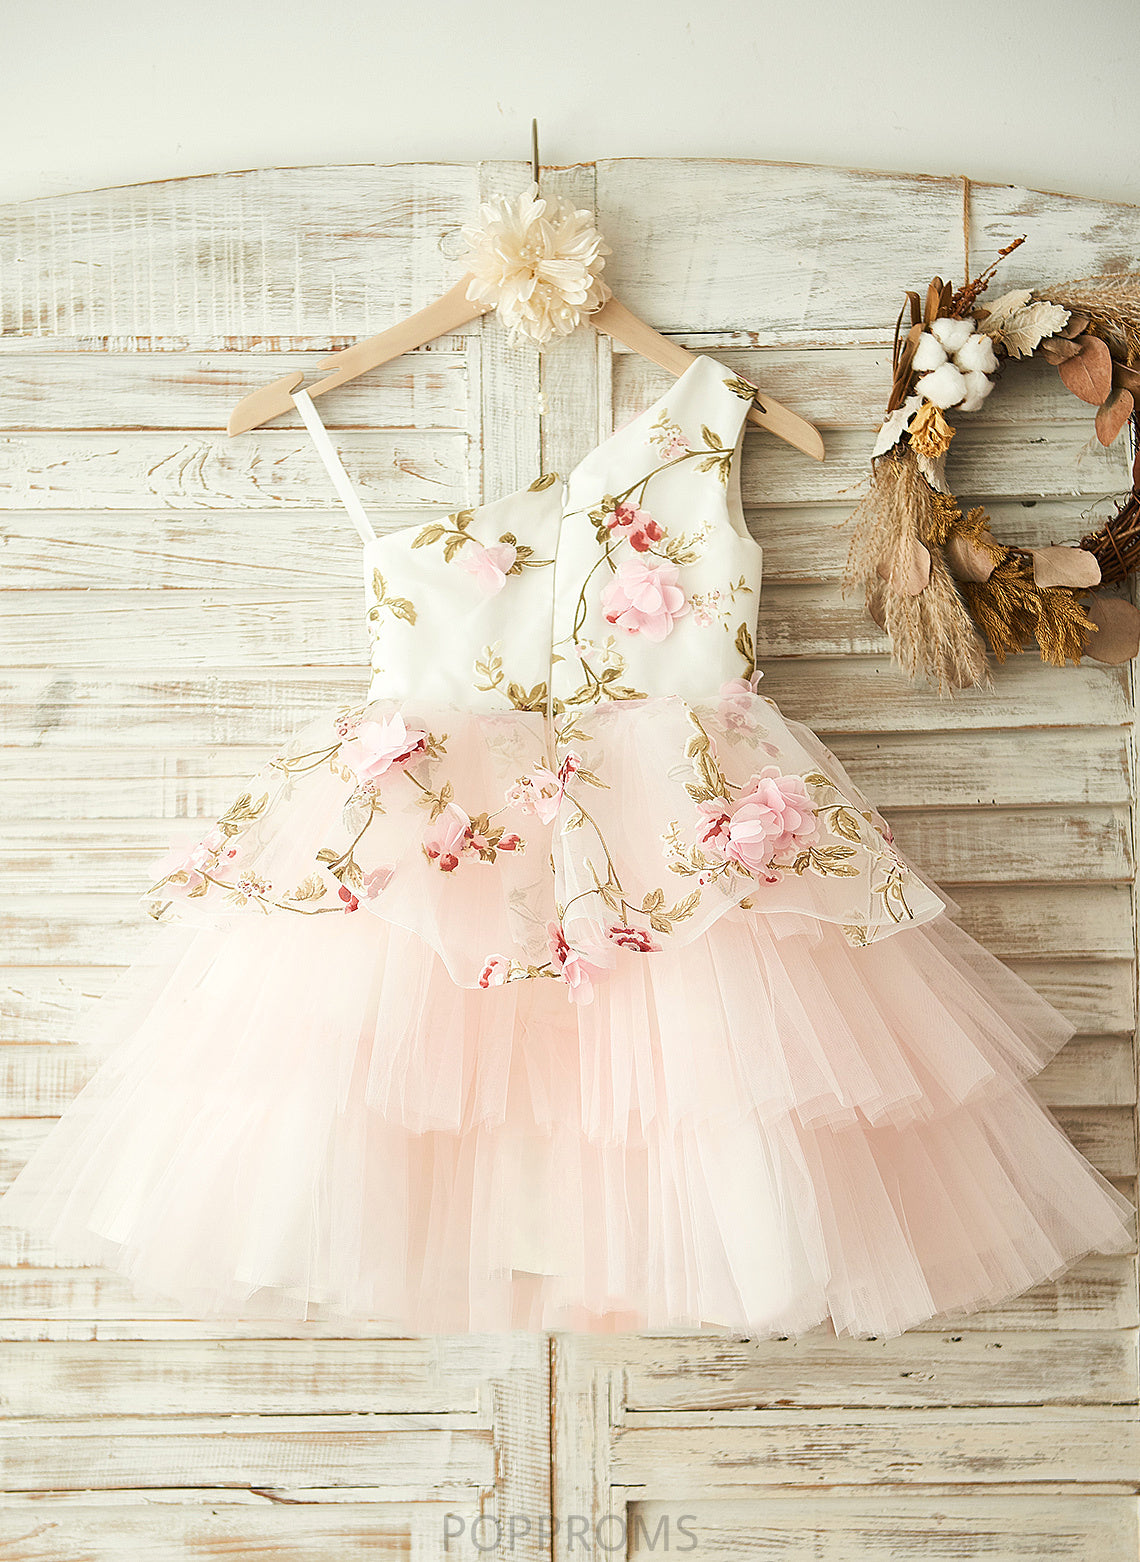 - A-Line With Sleeveless Flower Dress Flower(s) Josephine Tulle Girl Knee-length Flower Girl Dresses One-Shoulder